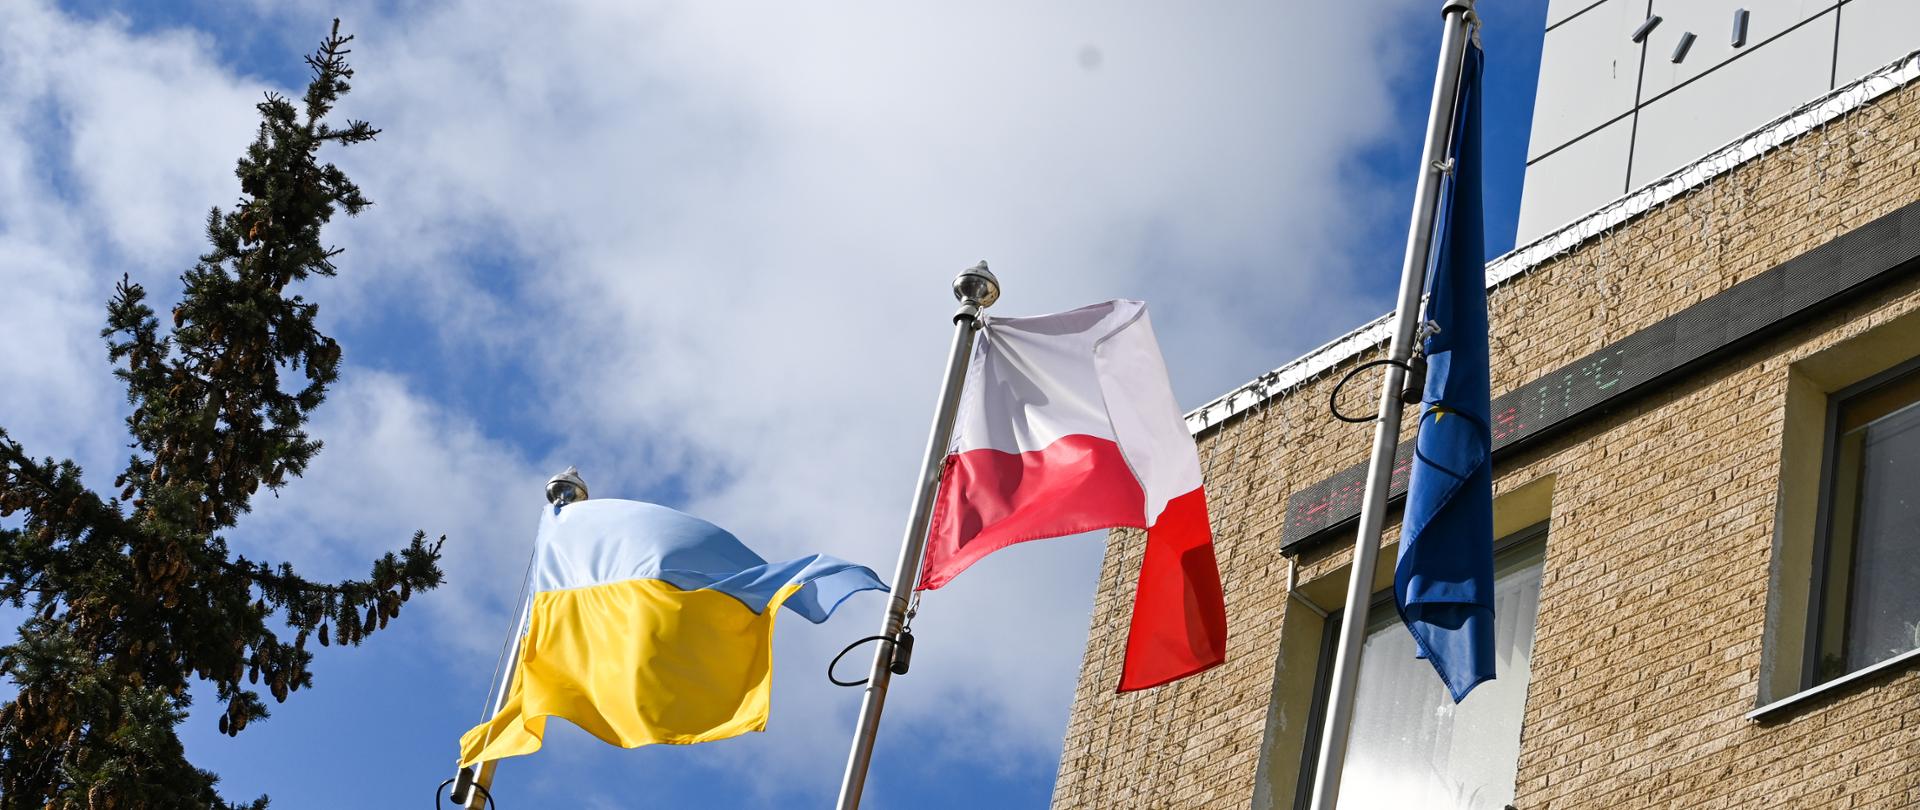 25.02.2022 wywieszenie flagi Ukrainy przed budynkiem Starostwa Powiatowego w Pruszkowie - znak solidarności